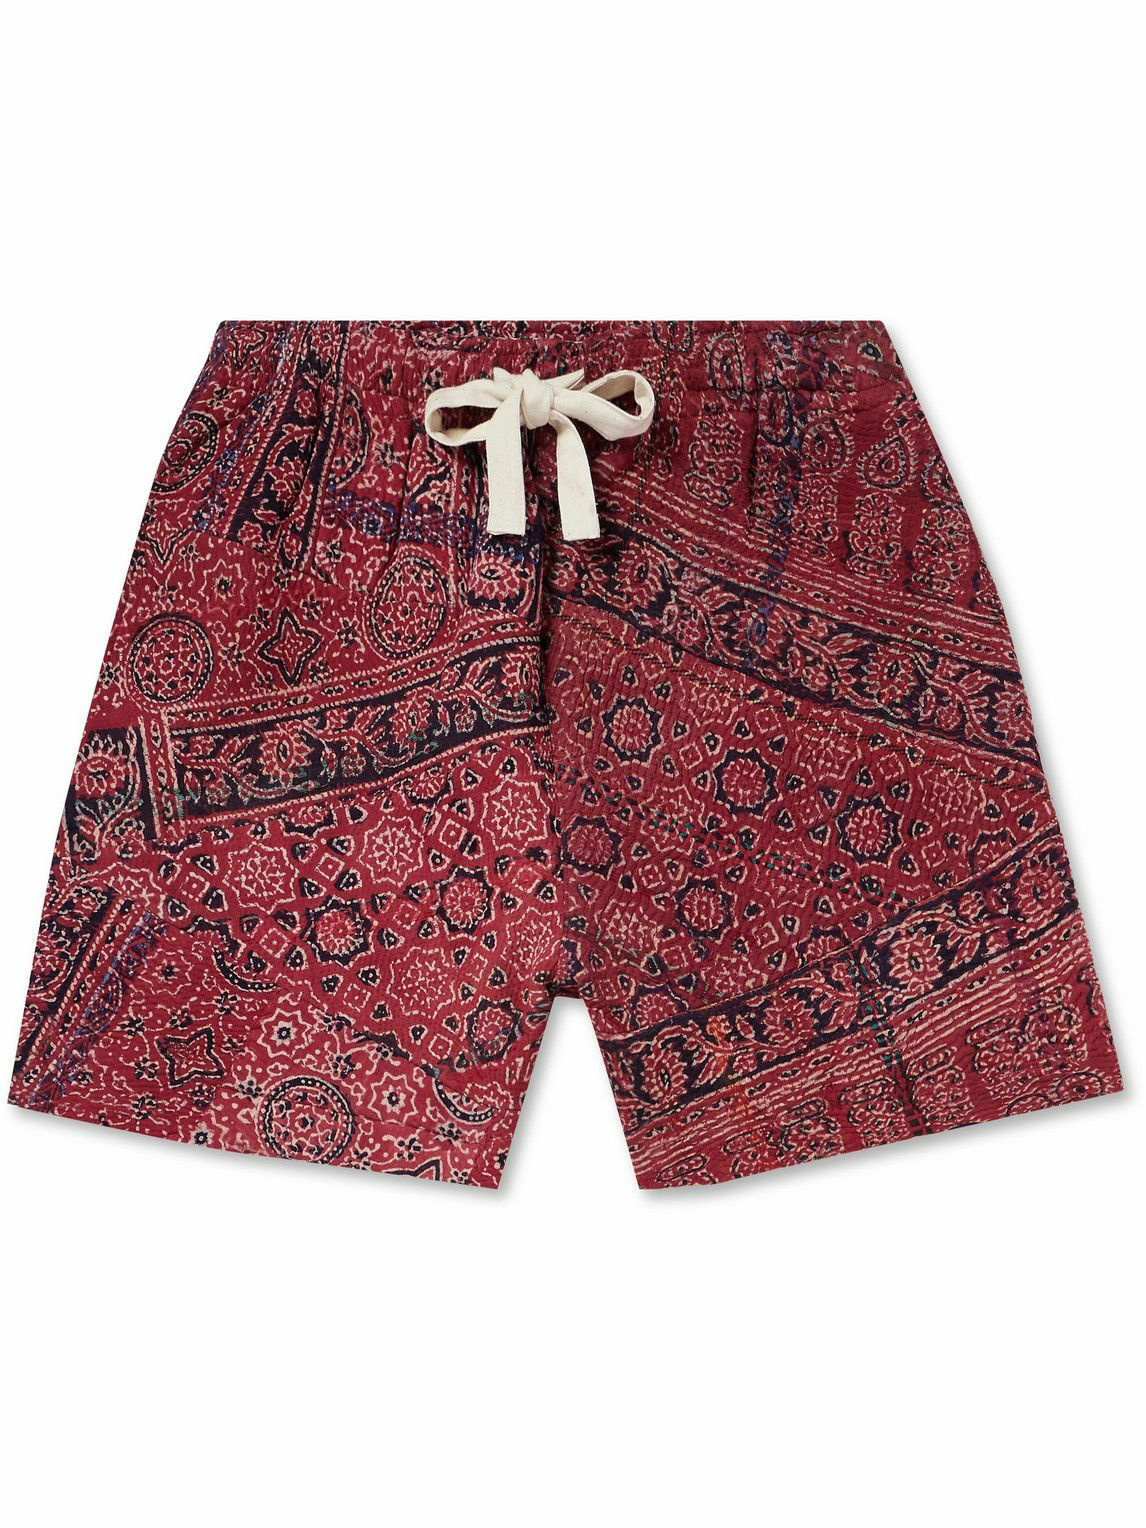 Photo: Kartik Research - Ajrakh Printed Cotton Drawstring Shorts - Red